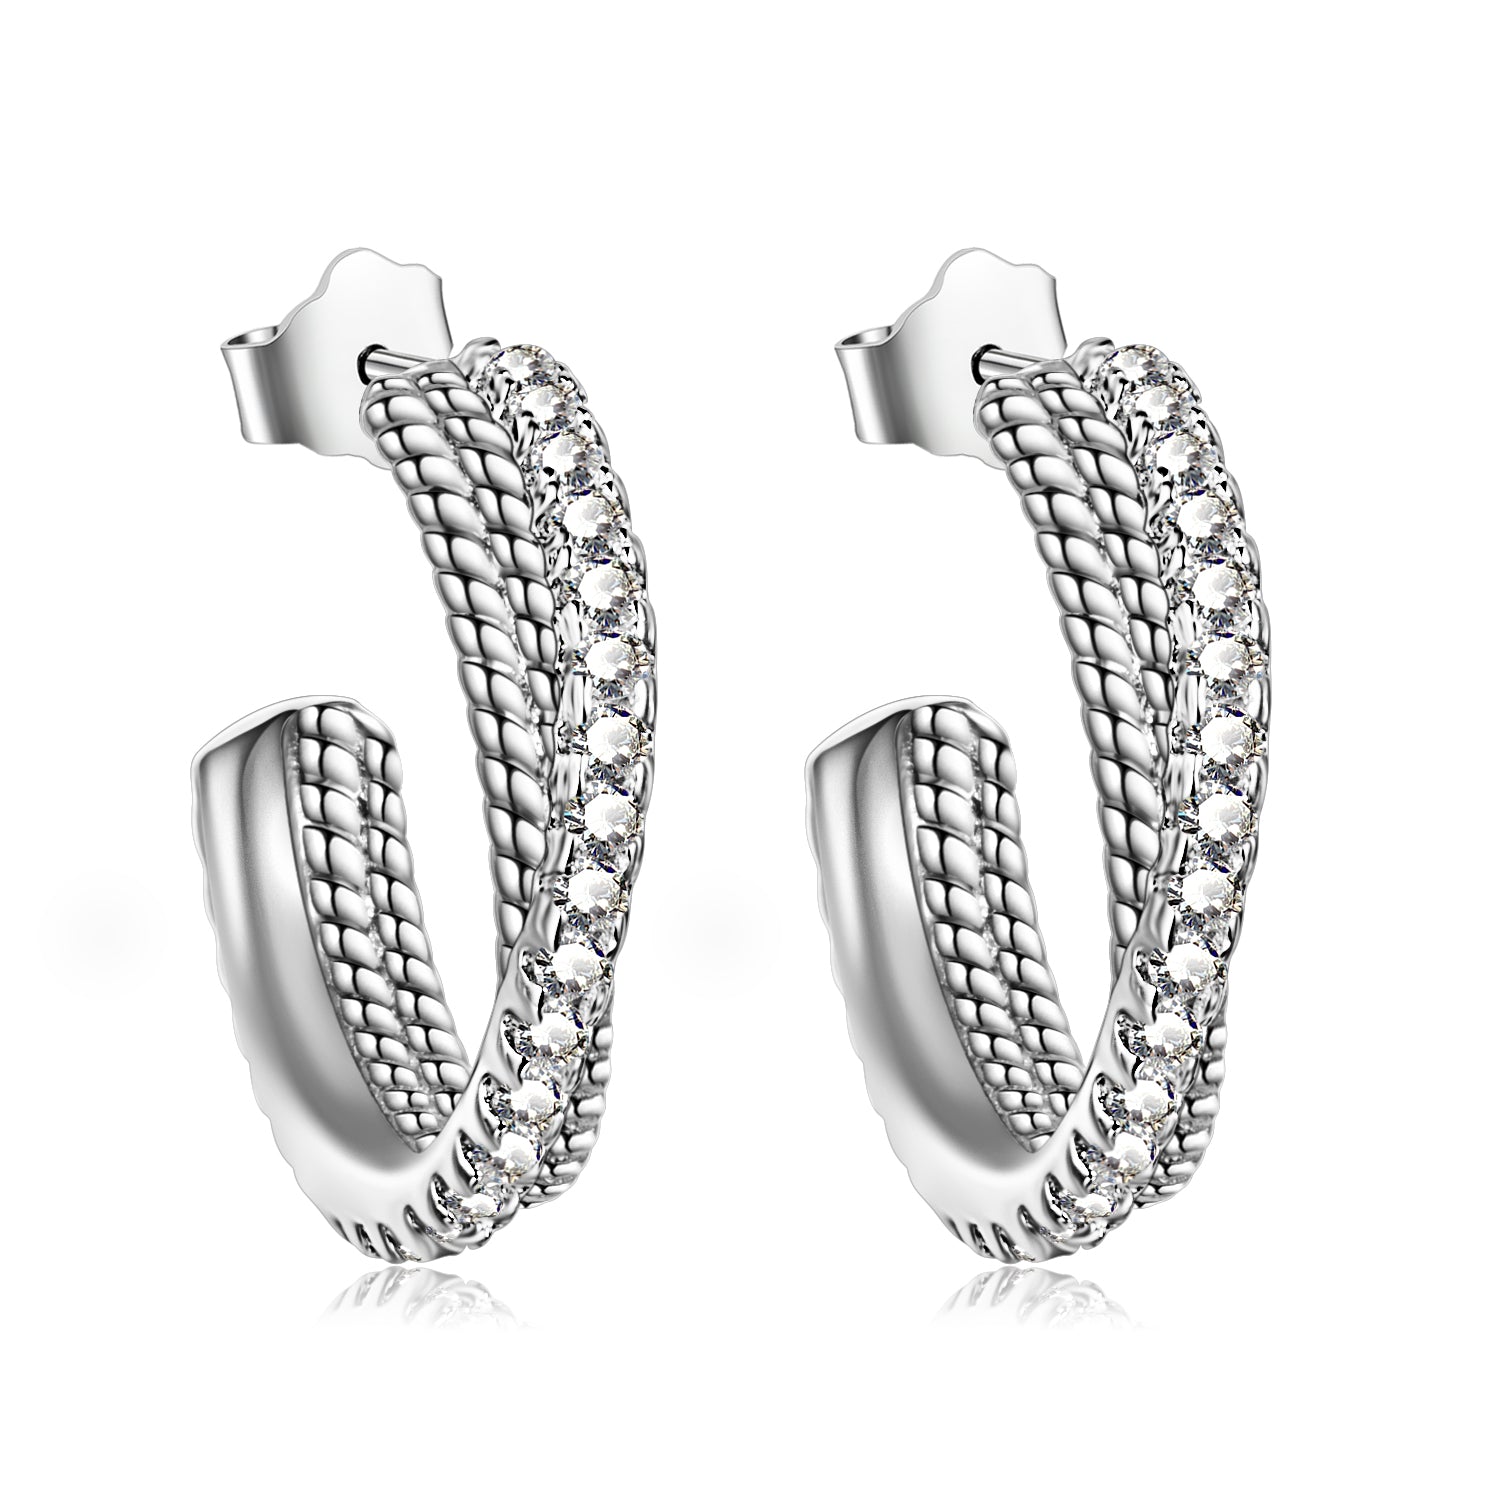 Twist Best Selling Earring Small Gemstone Cool Design Silver Earrings